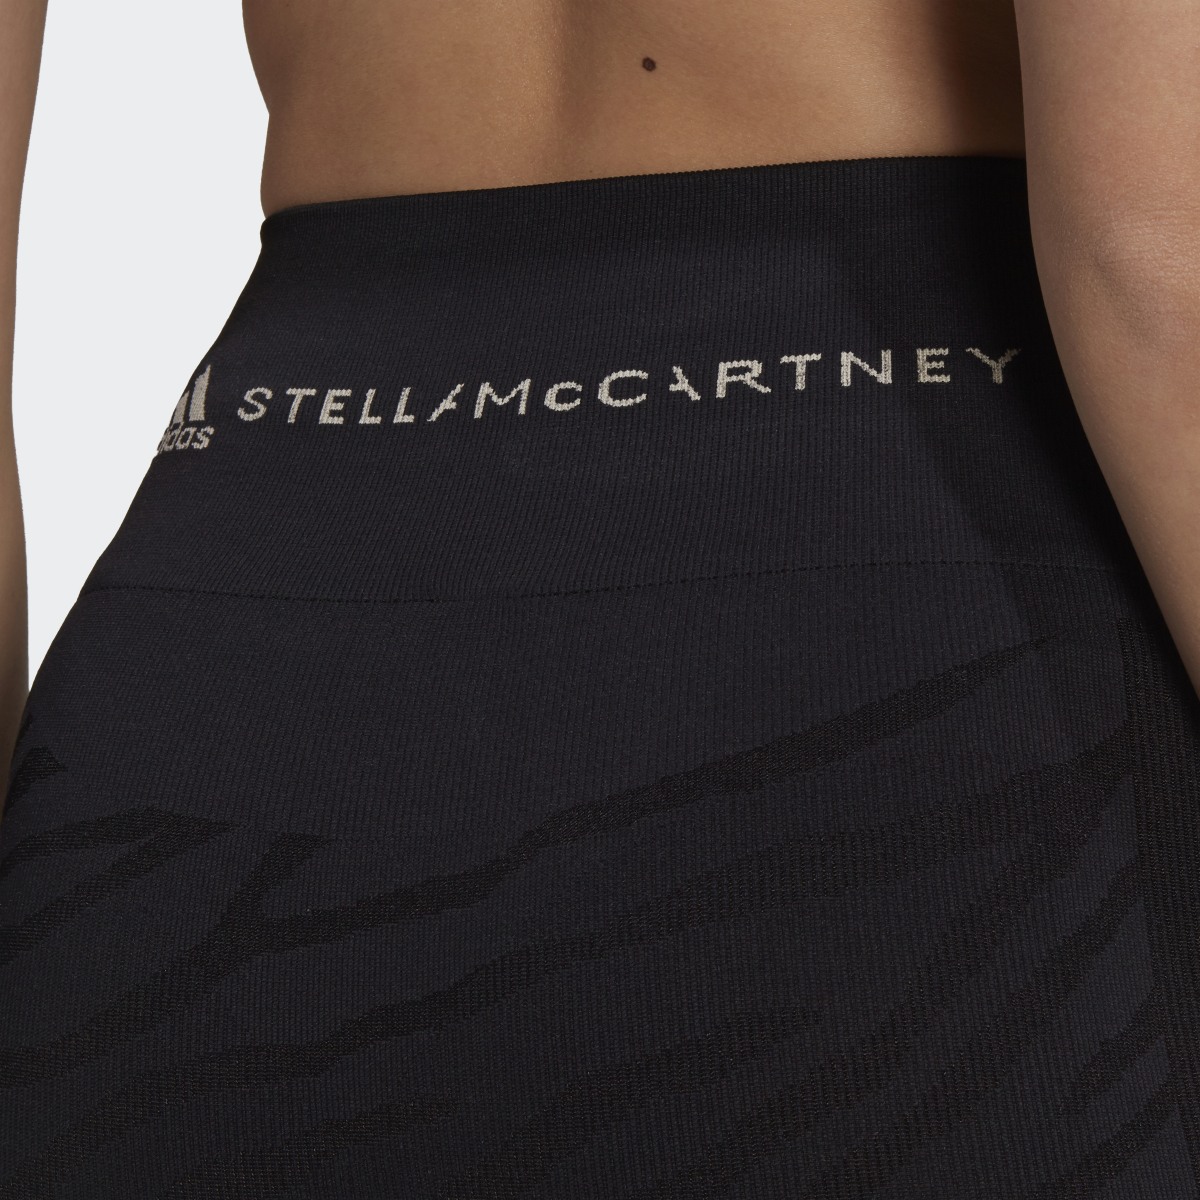 Adidas by Stella McCartney Seamless Yoga Tights. 6